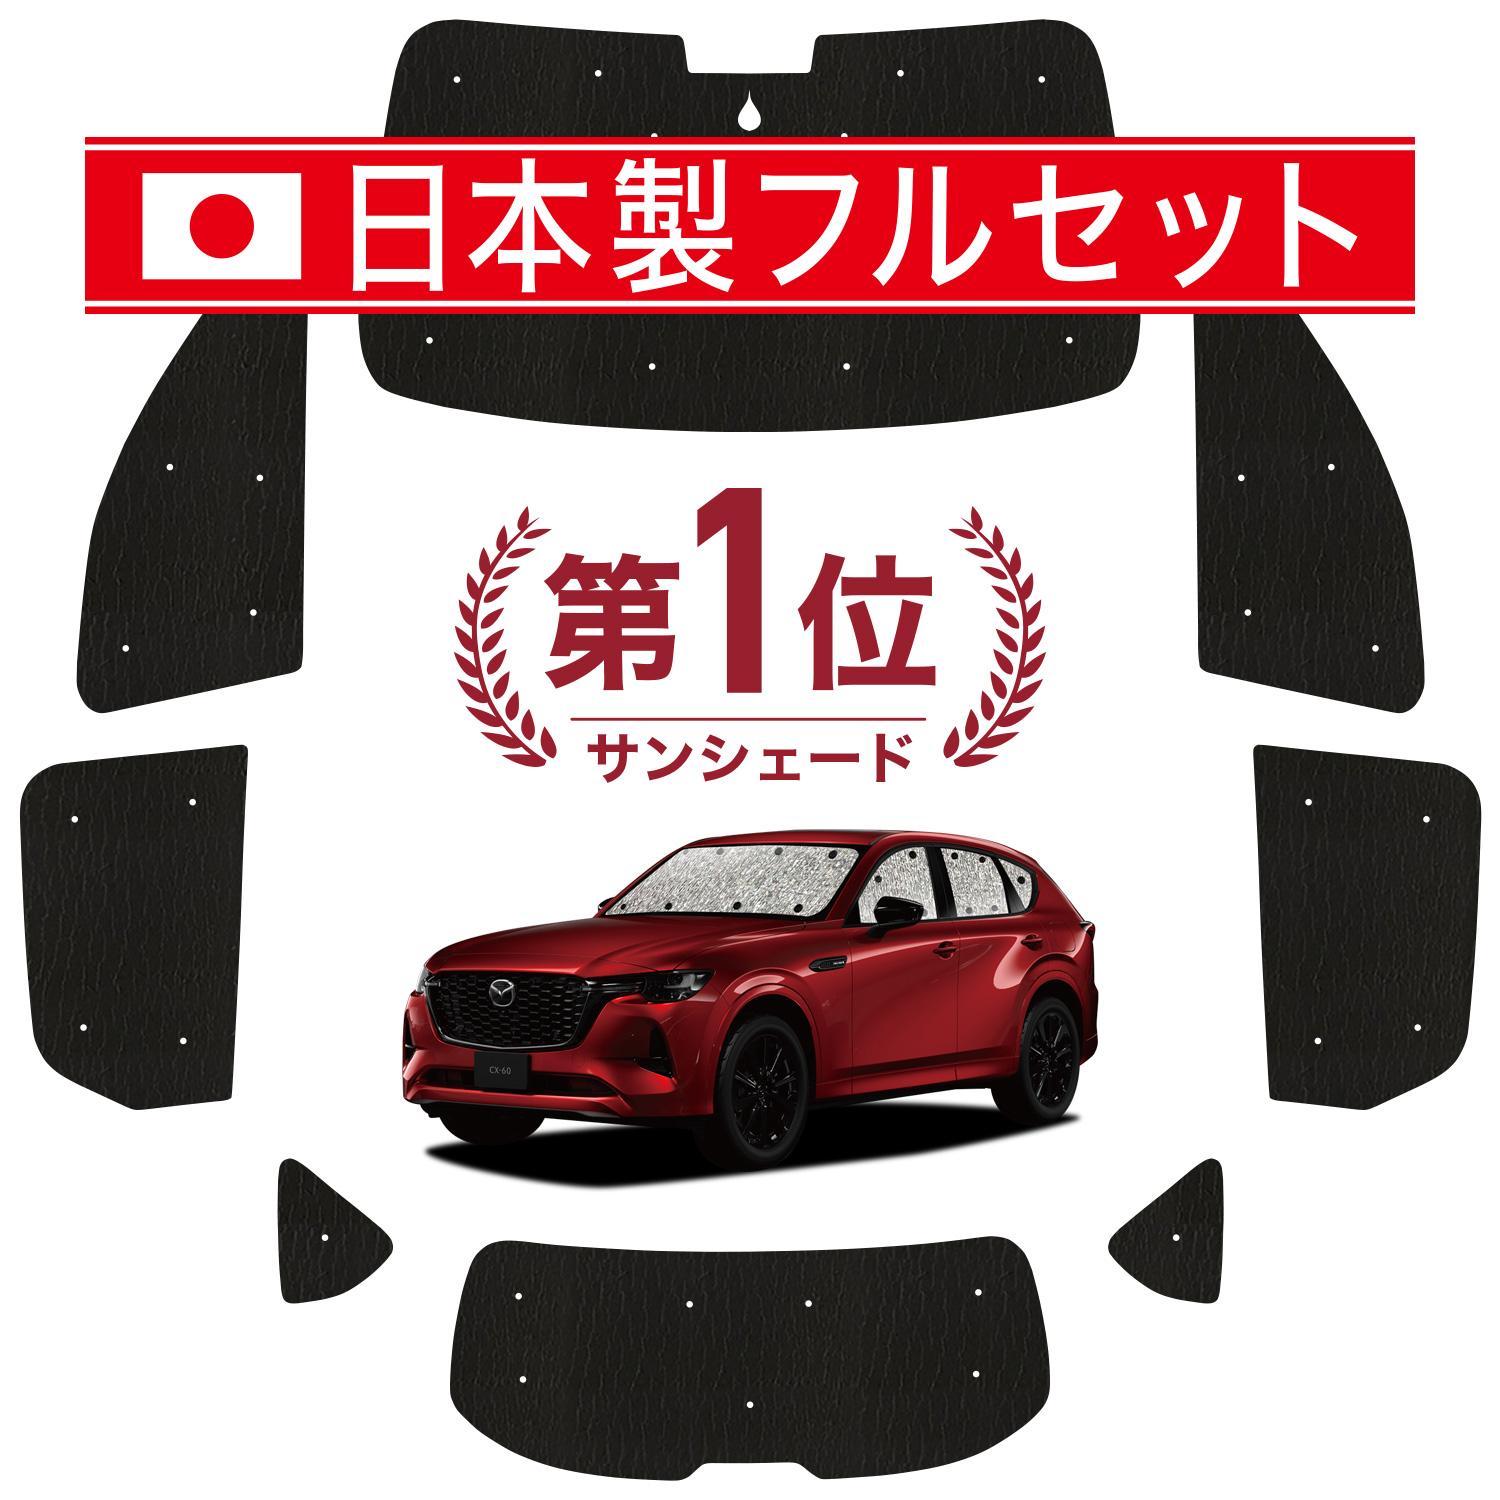 【国産/1台フルセット】 MAZDA CX-60 KH系 カーテン サンシェード 車中泊 グッズ シームレス ライト シームレスサンシェード 車用カーテ